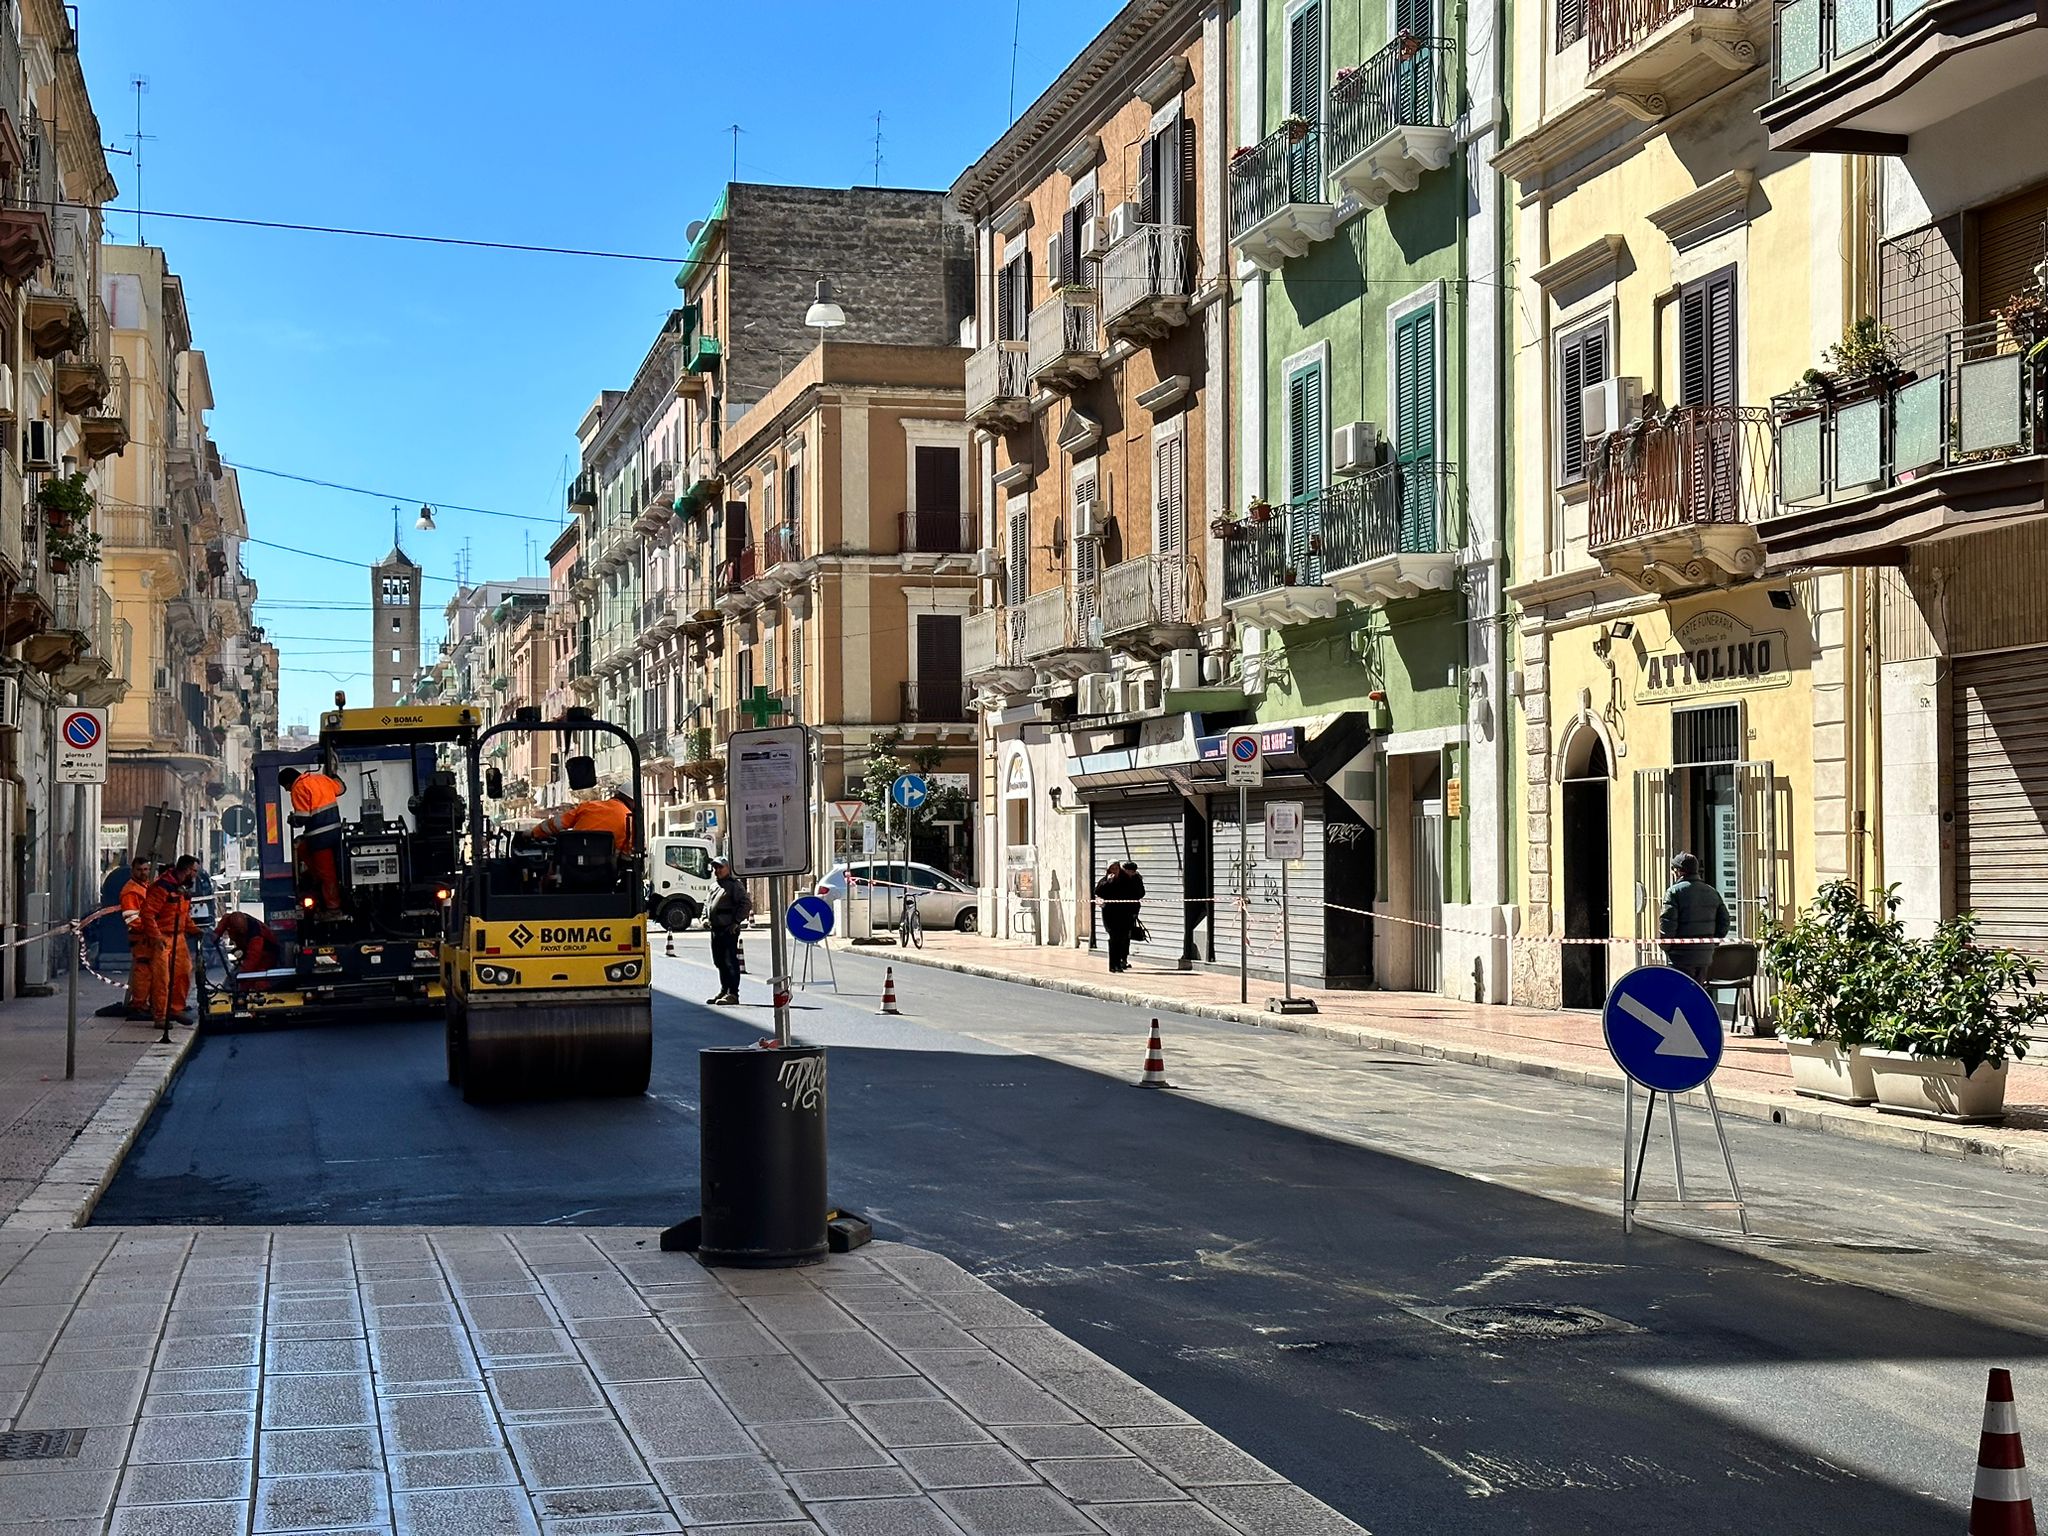 “Strada x strada”, continua la riqualificazione di asfalto e marciapiedi in tutta la città